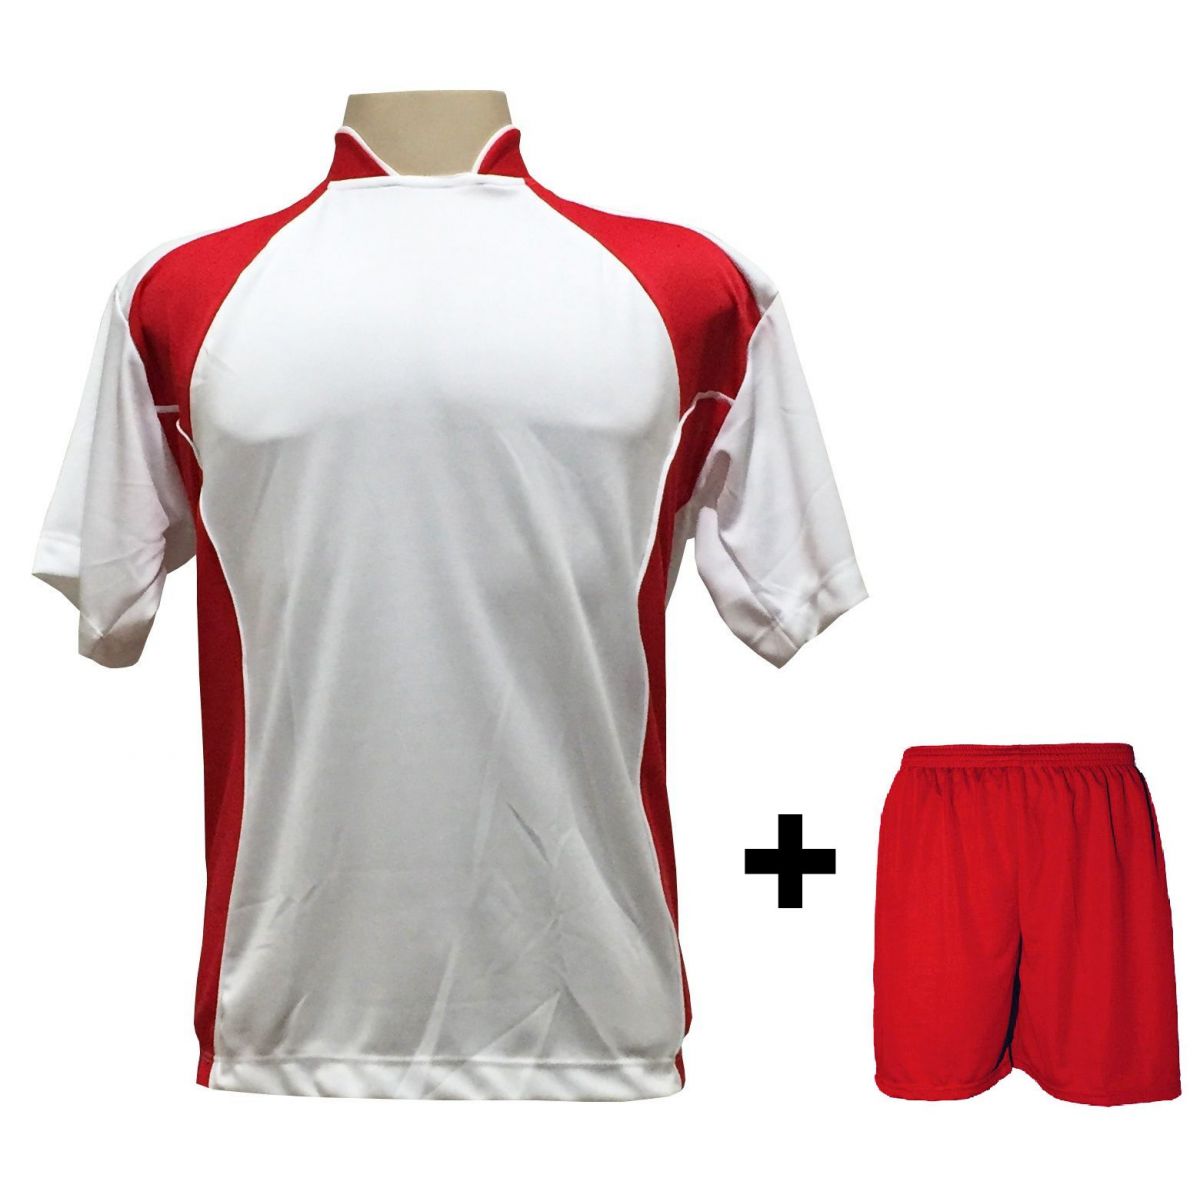 Uniforme Esportivo com 14 camisas modelo Suécia Branco/Vermelho + 14 calções modelo Madrid + 1 Goleiro + Brindes